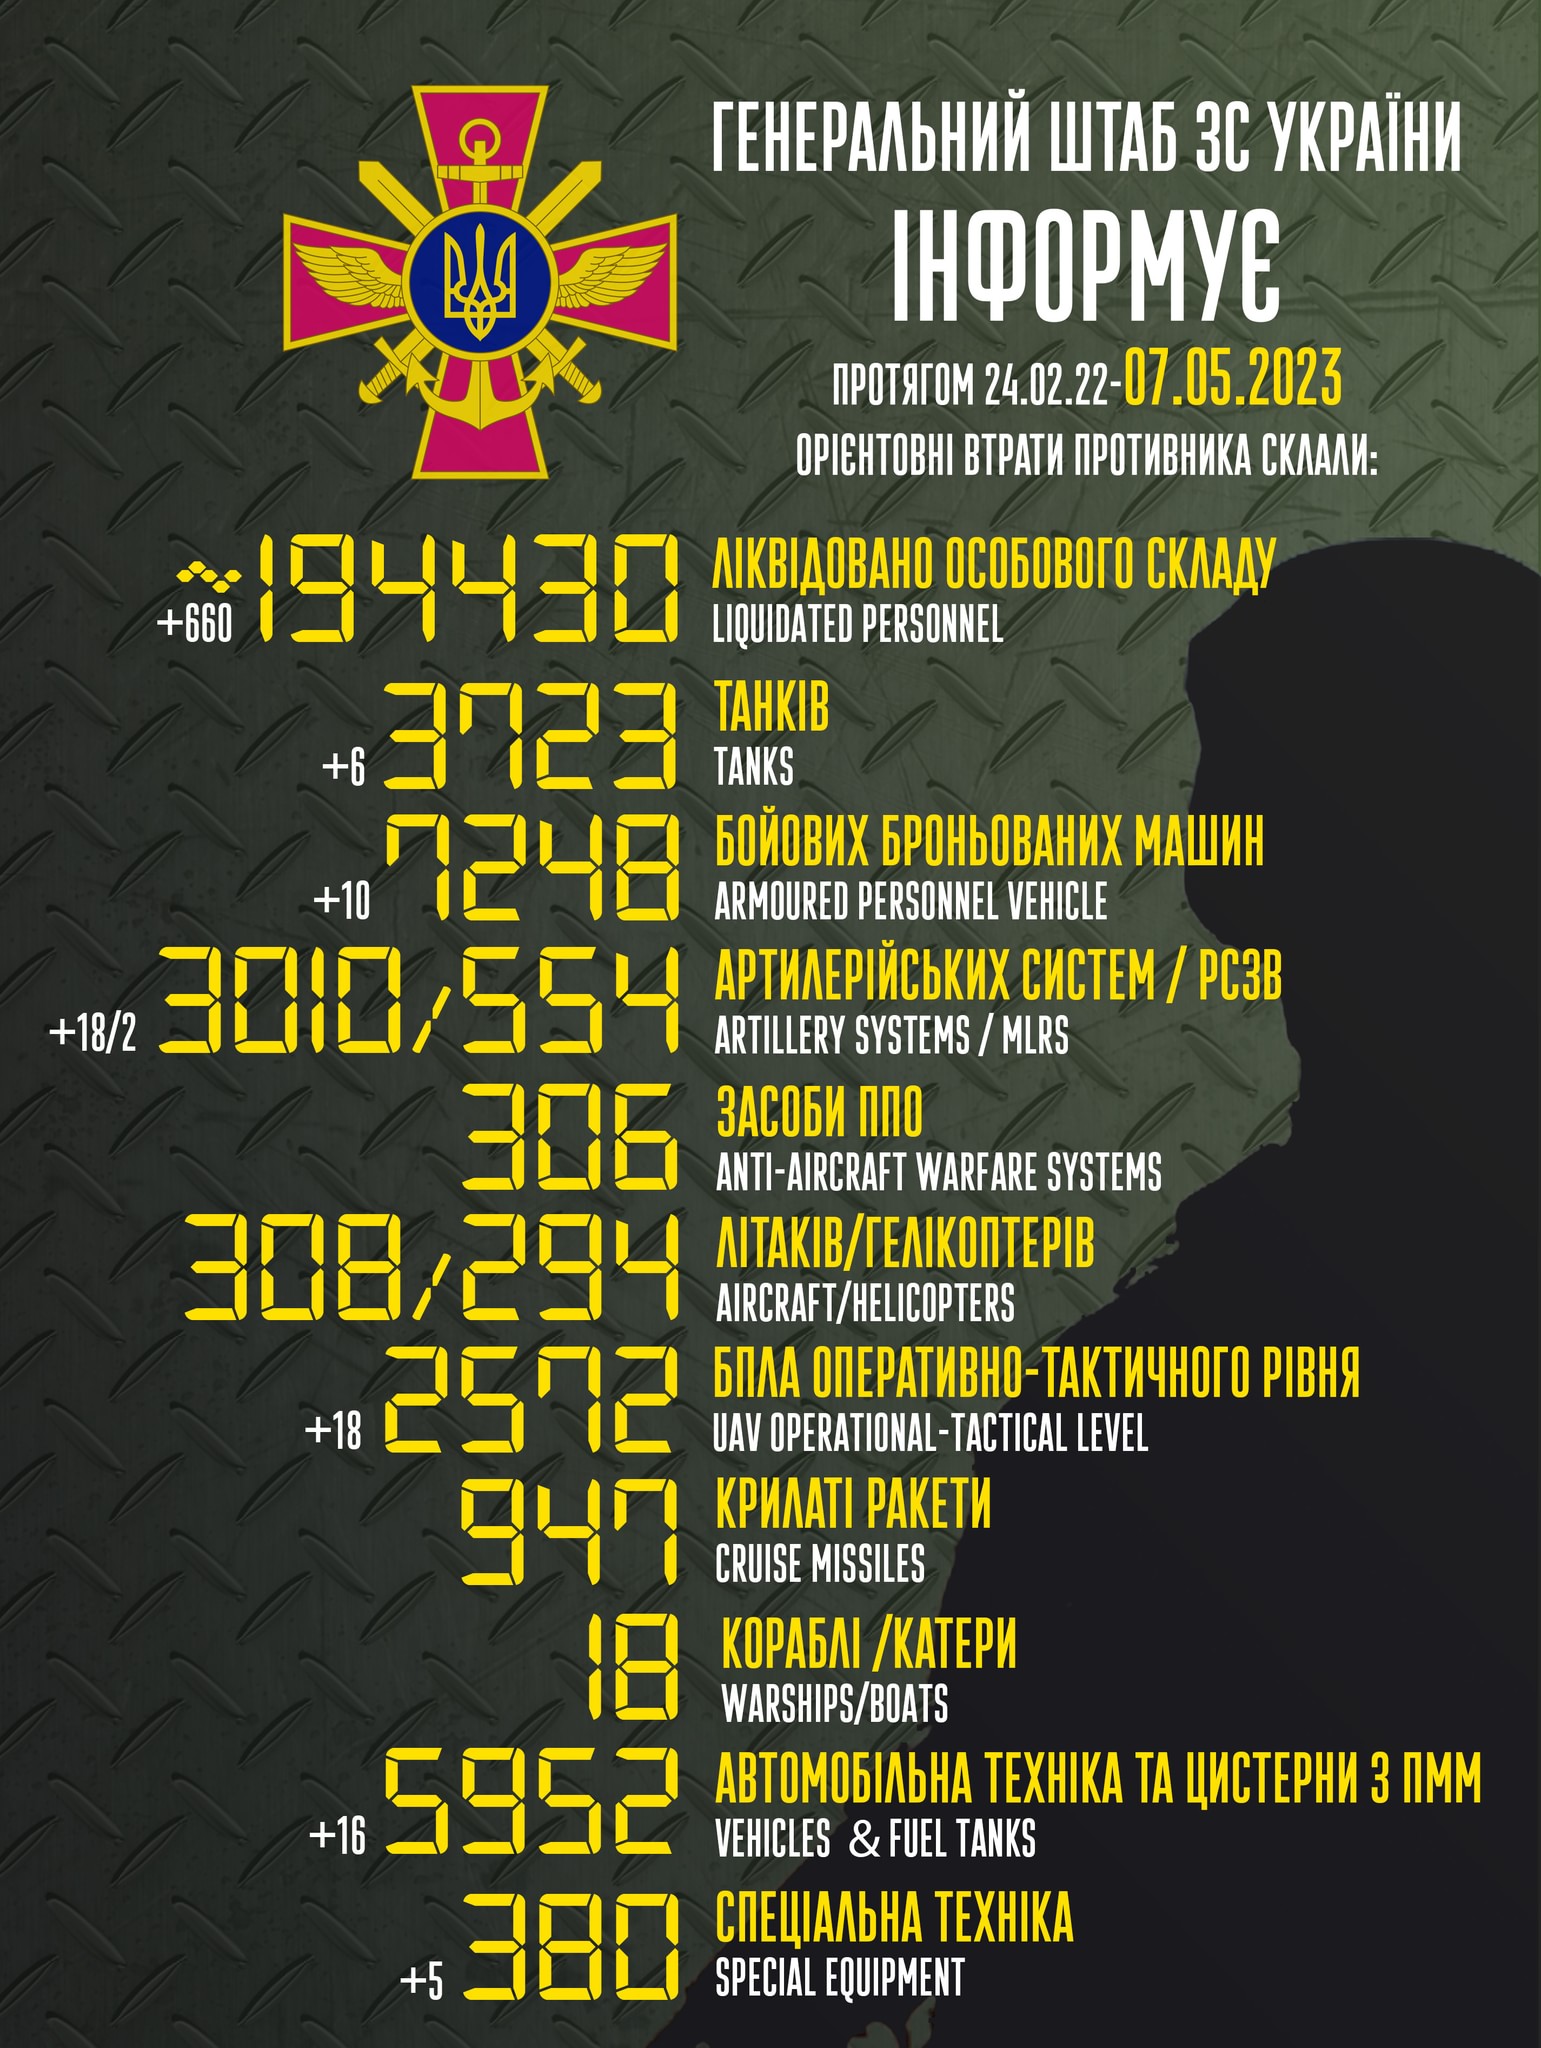 Втрати Росії: ЗСУ знищили 660 росіян, 10 БМП, 18 артсистем, 18 безпілотників за добу